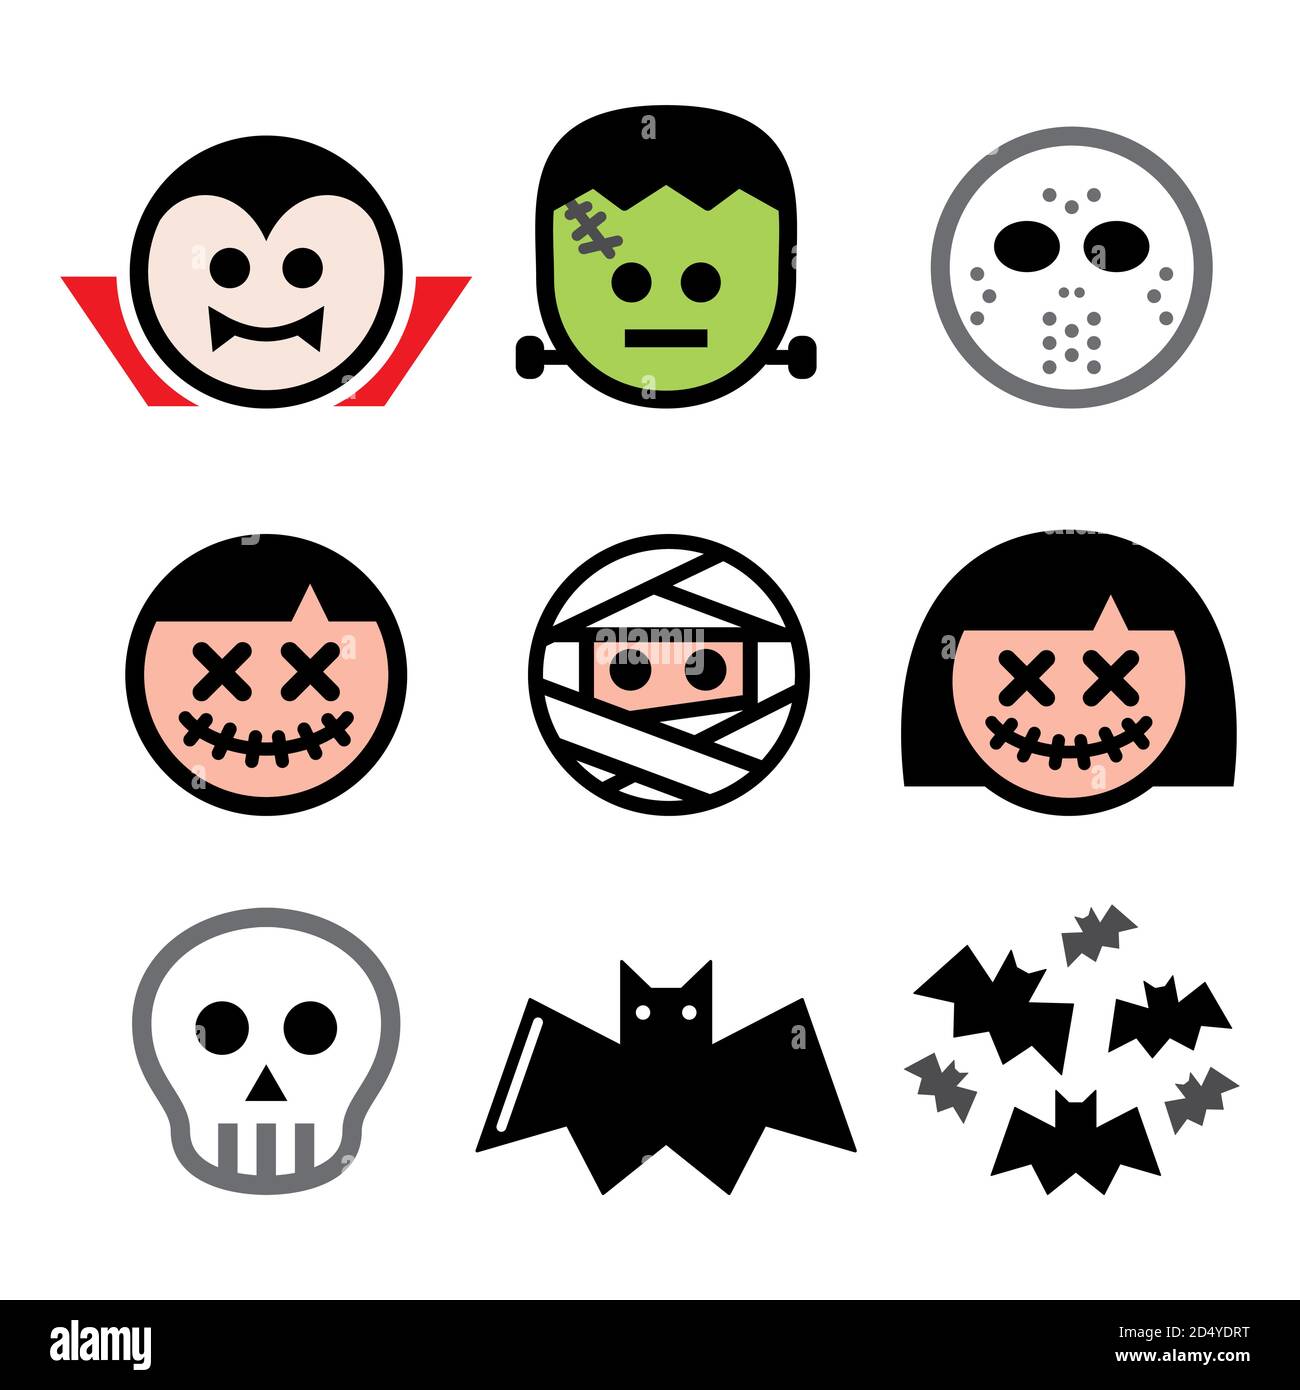 Halloween vector characters design set - Dracula, mummy, Frankenstein skull icons Stock Vector